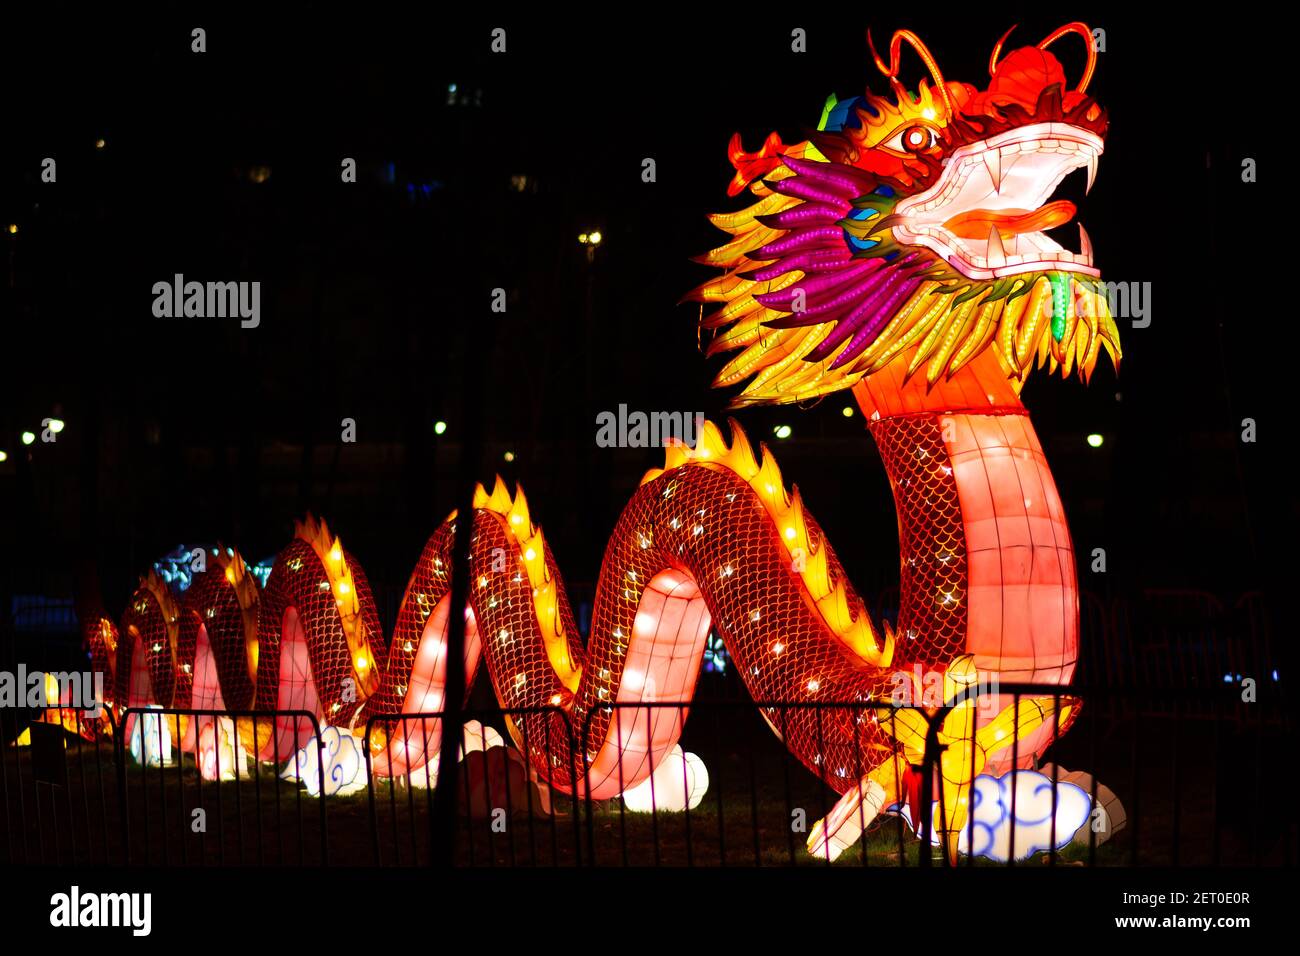 Festival des lanternes chinoises au parc de Limanski. Photo complète du dragon chinois de la mythologie chinoise. Banque D'Images